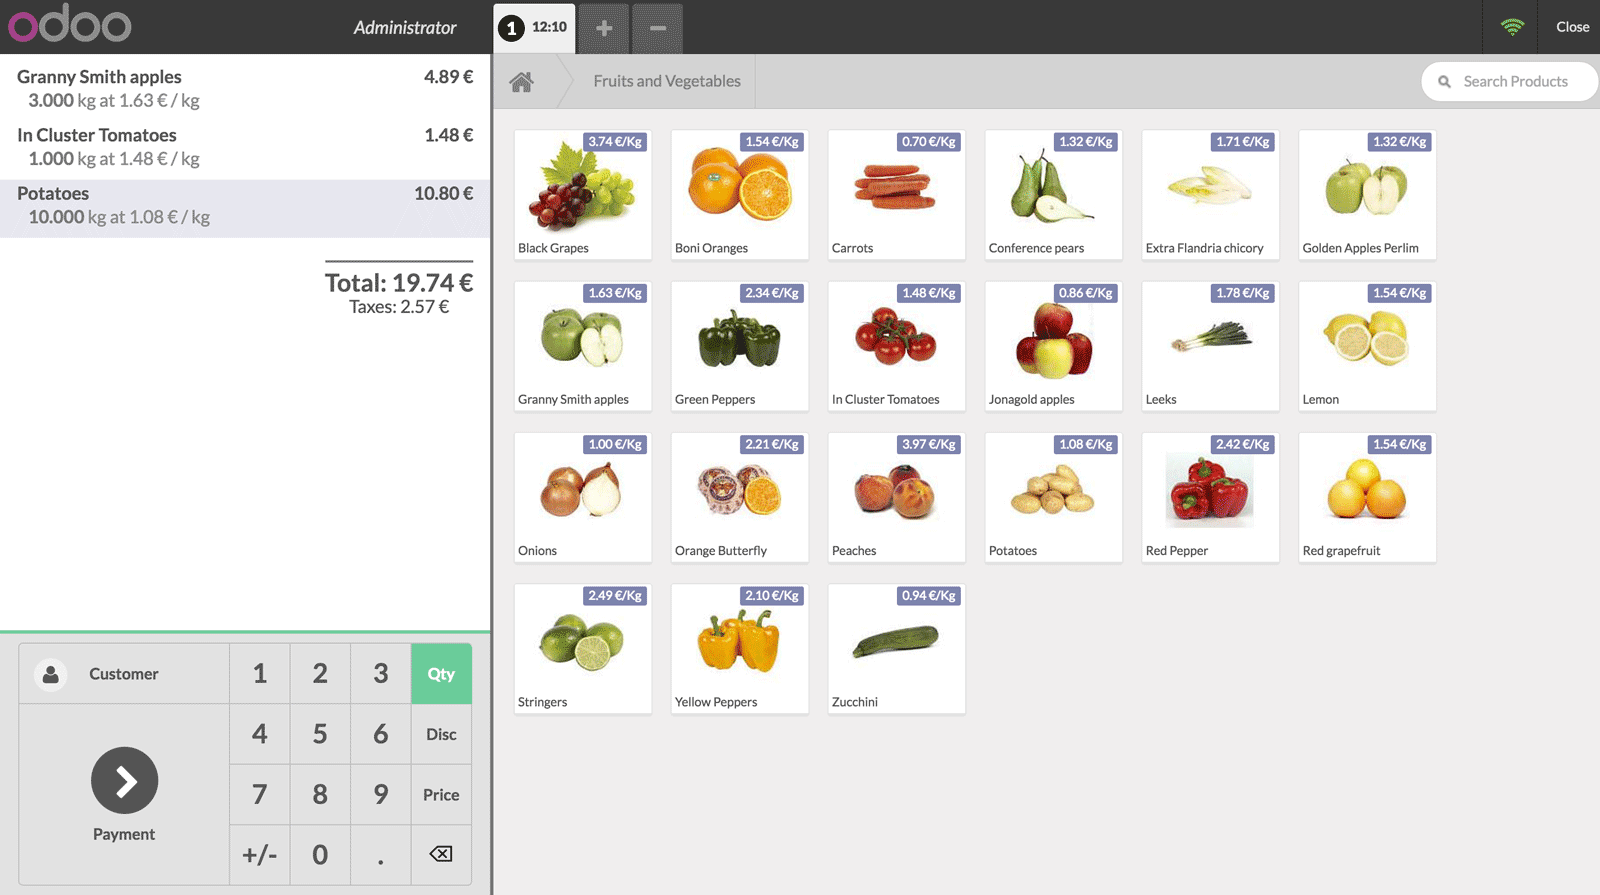 Odoo Kassensystem - Kassenschnittstelle mit einer Liste von Obst und Gemüse